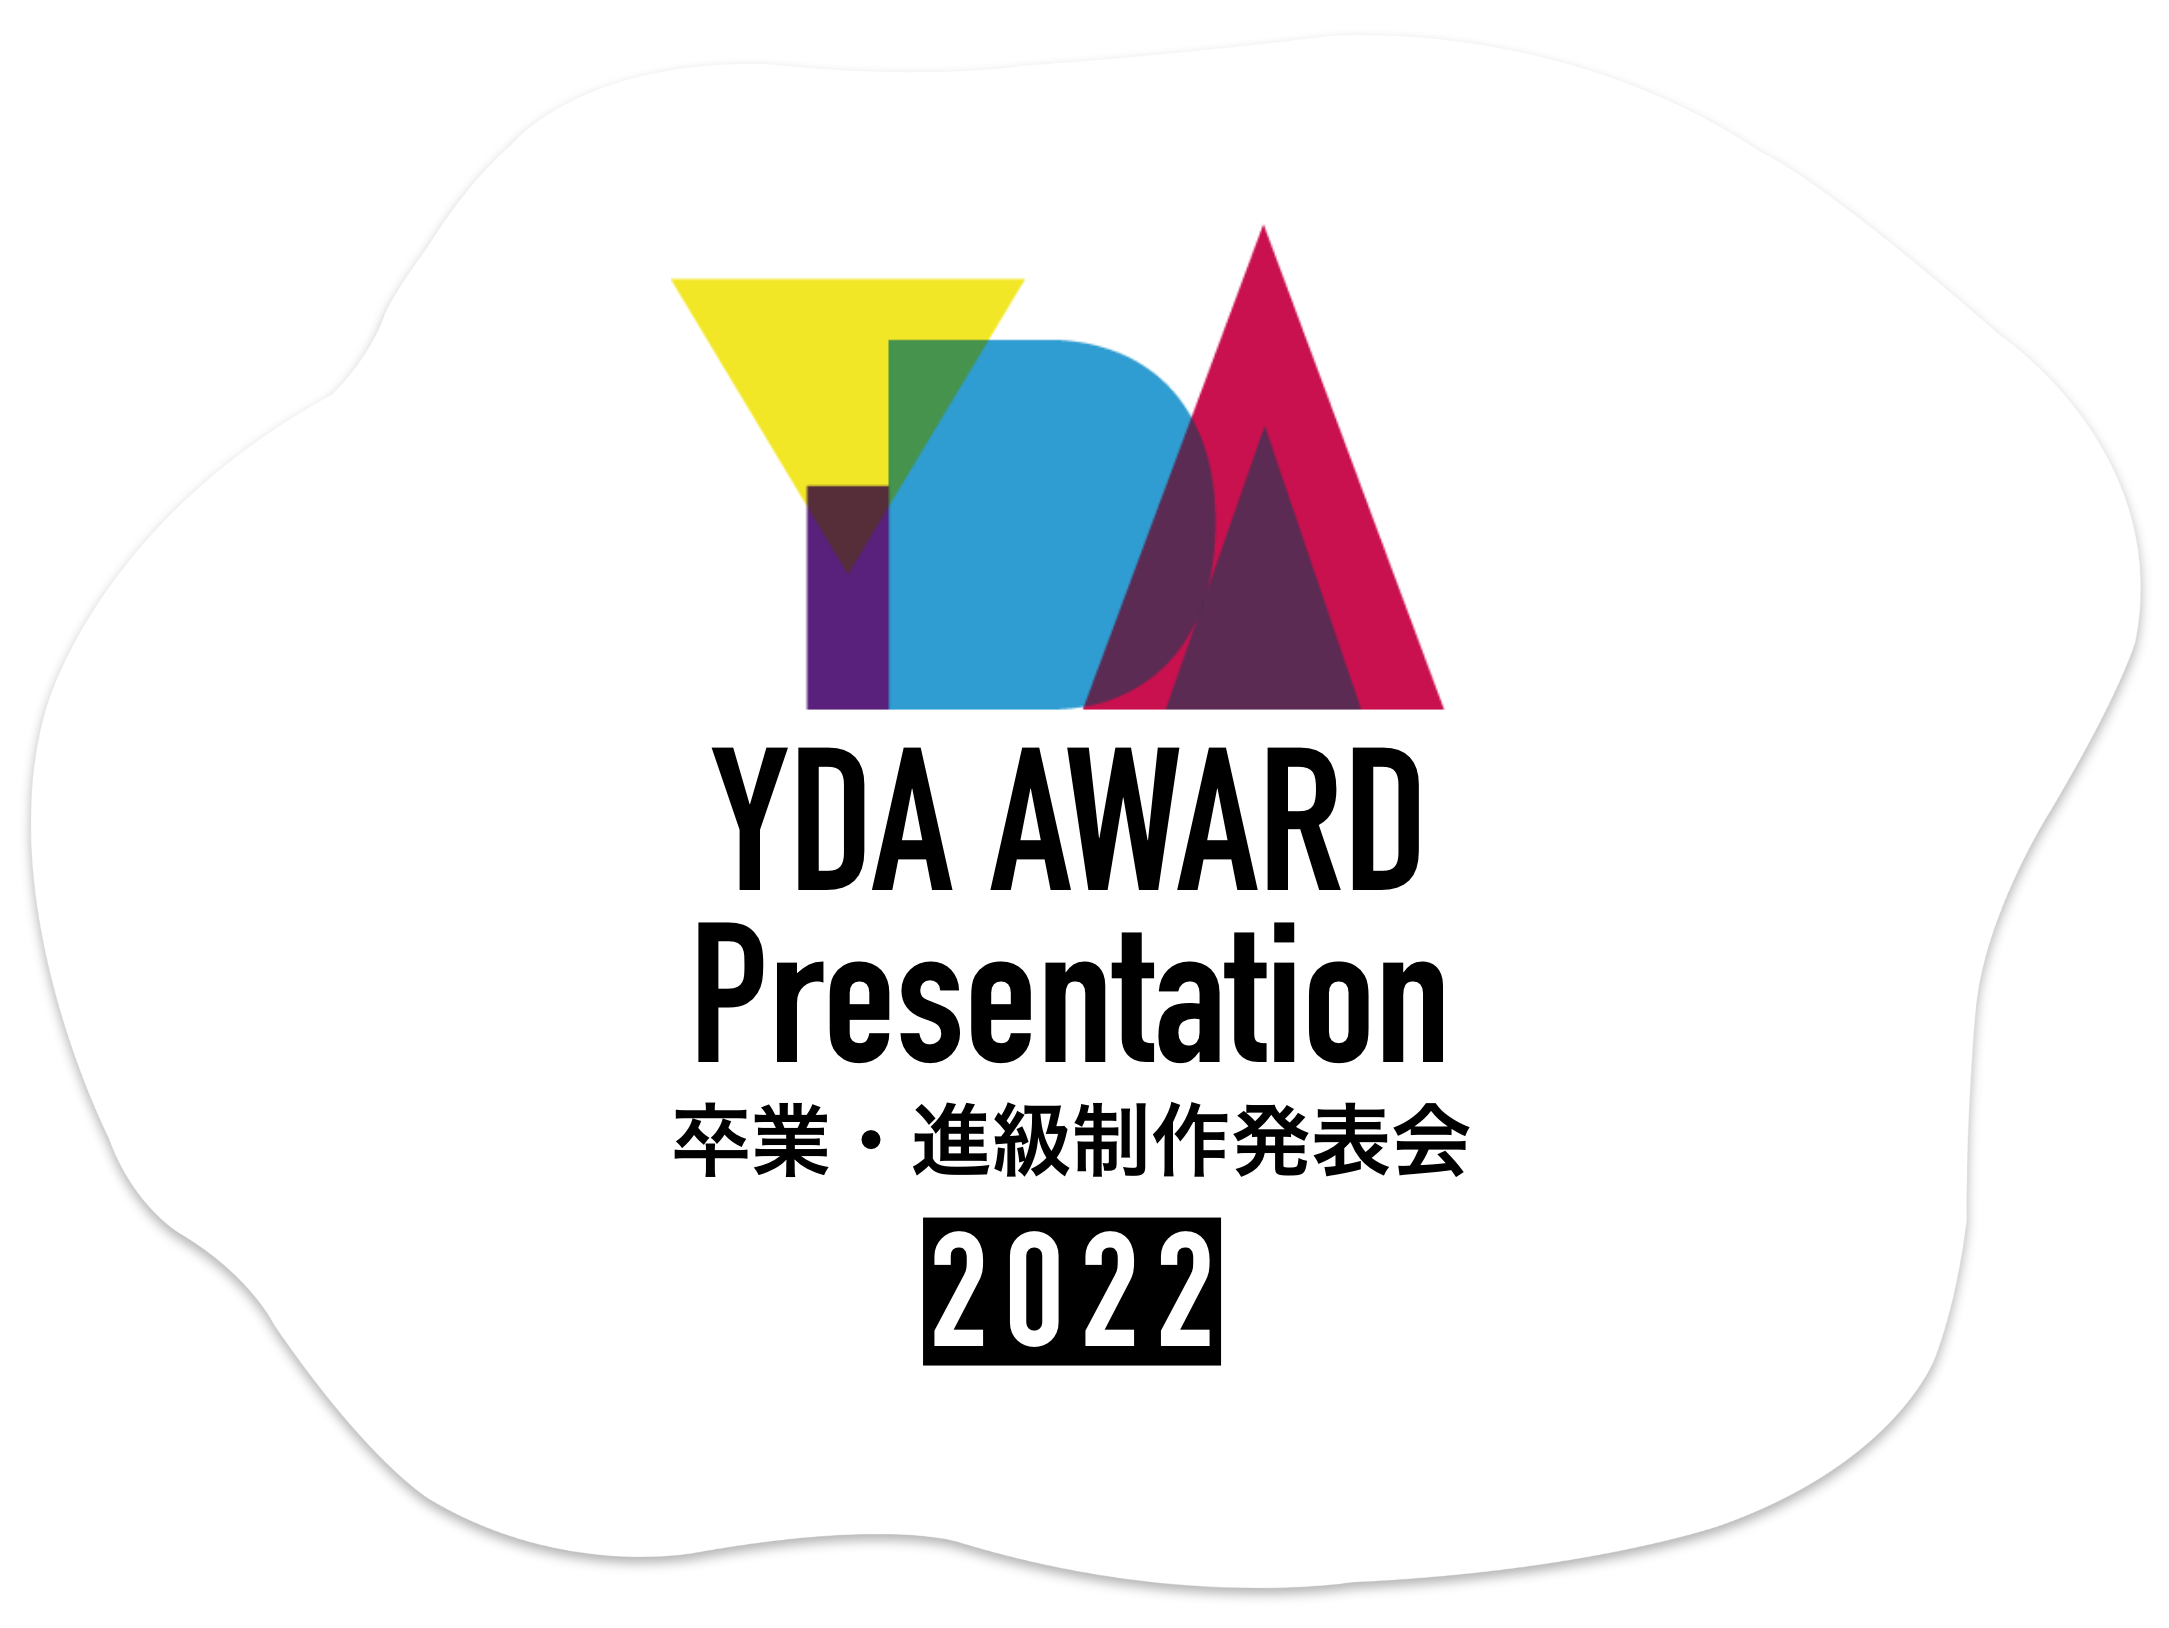 YDA AWARD PRESENTATION 2022